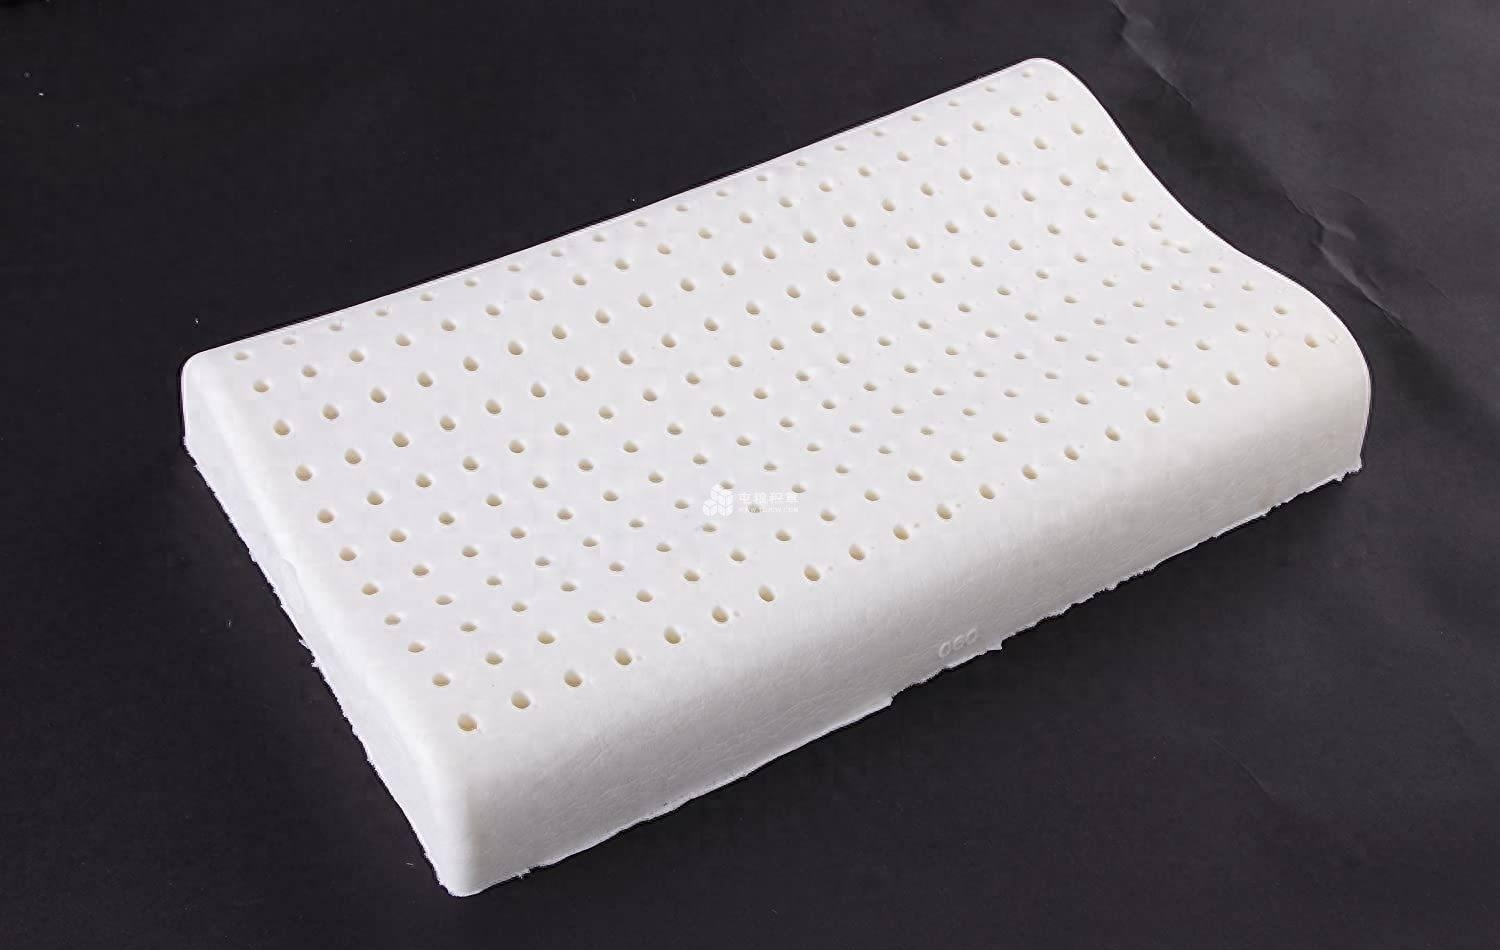 乳胶枕头的安全性引发了争议，但并不意味着所有的乳胶产品都是有害的。乳胶枕头作为一种日常用品，其安全性还是值得信赖的。然而，消费者在购买和使用时仍需注意一些问题。选